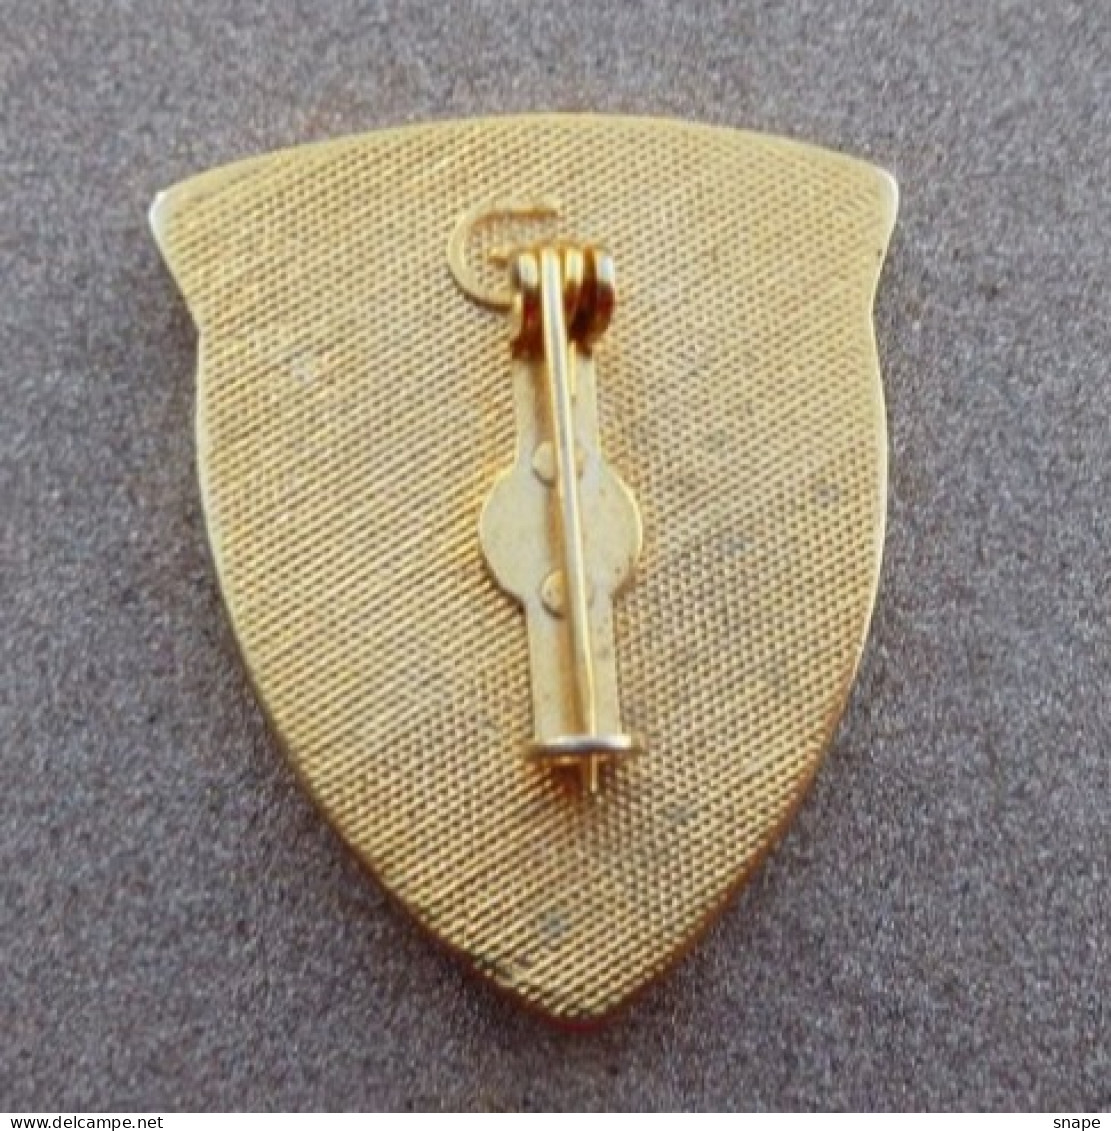 DISTINTIVO Vetrificato A Spilla BAZOOKA - Esercito Italiano Incarichi - Italian Army Pinned Badge - Used (286) - Army